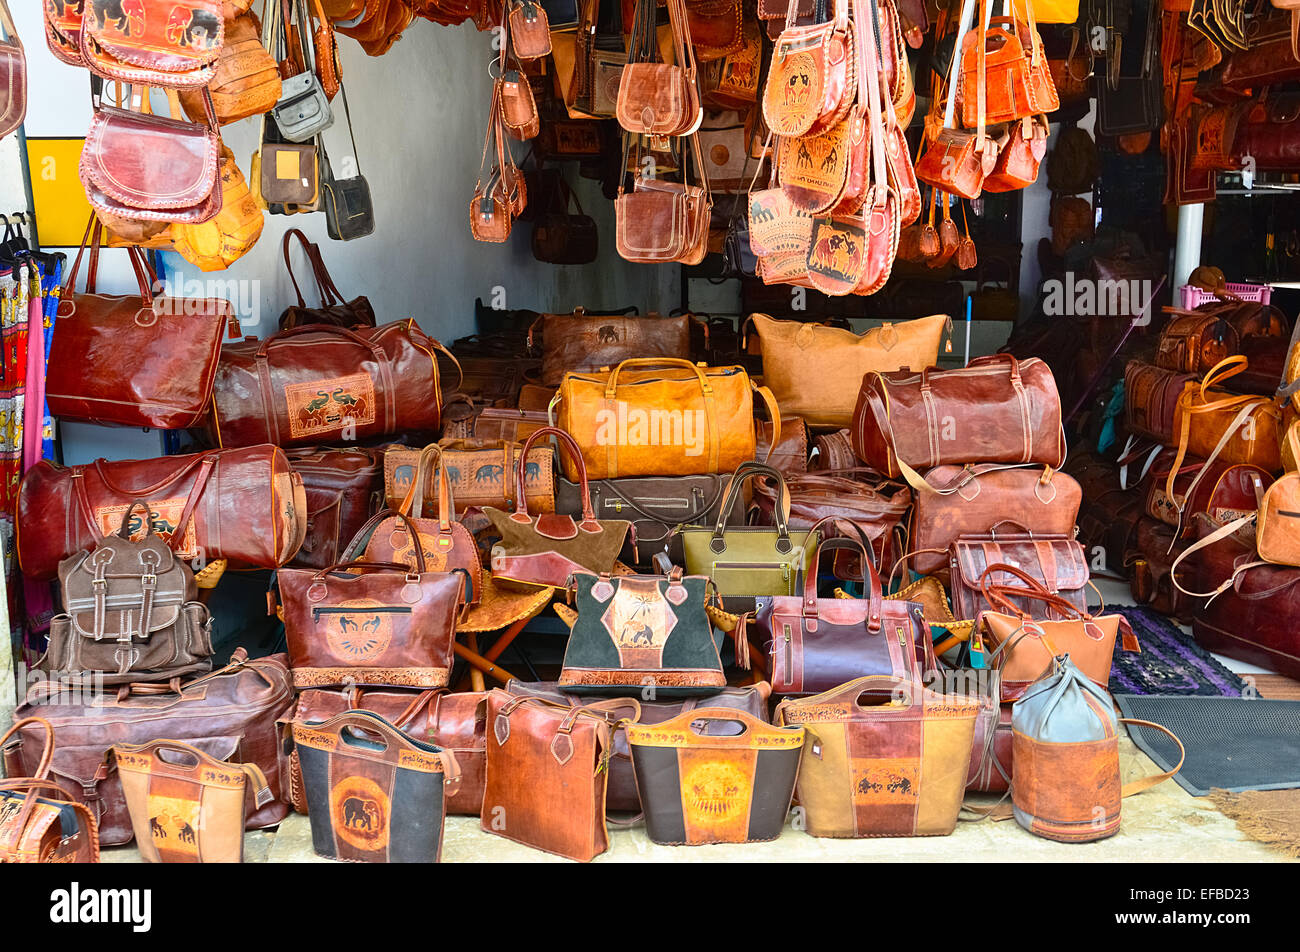 Что купить на шри ланке. Шоппинг в Коломбо Шри Ланка. Кожаные изделия из Шри Ланки. Кожаные сумки из Шри Ланки. Индия кожаные изделия.